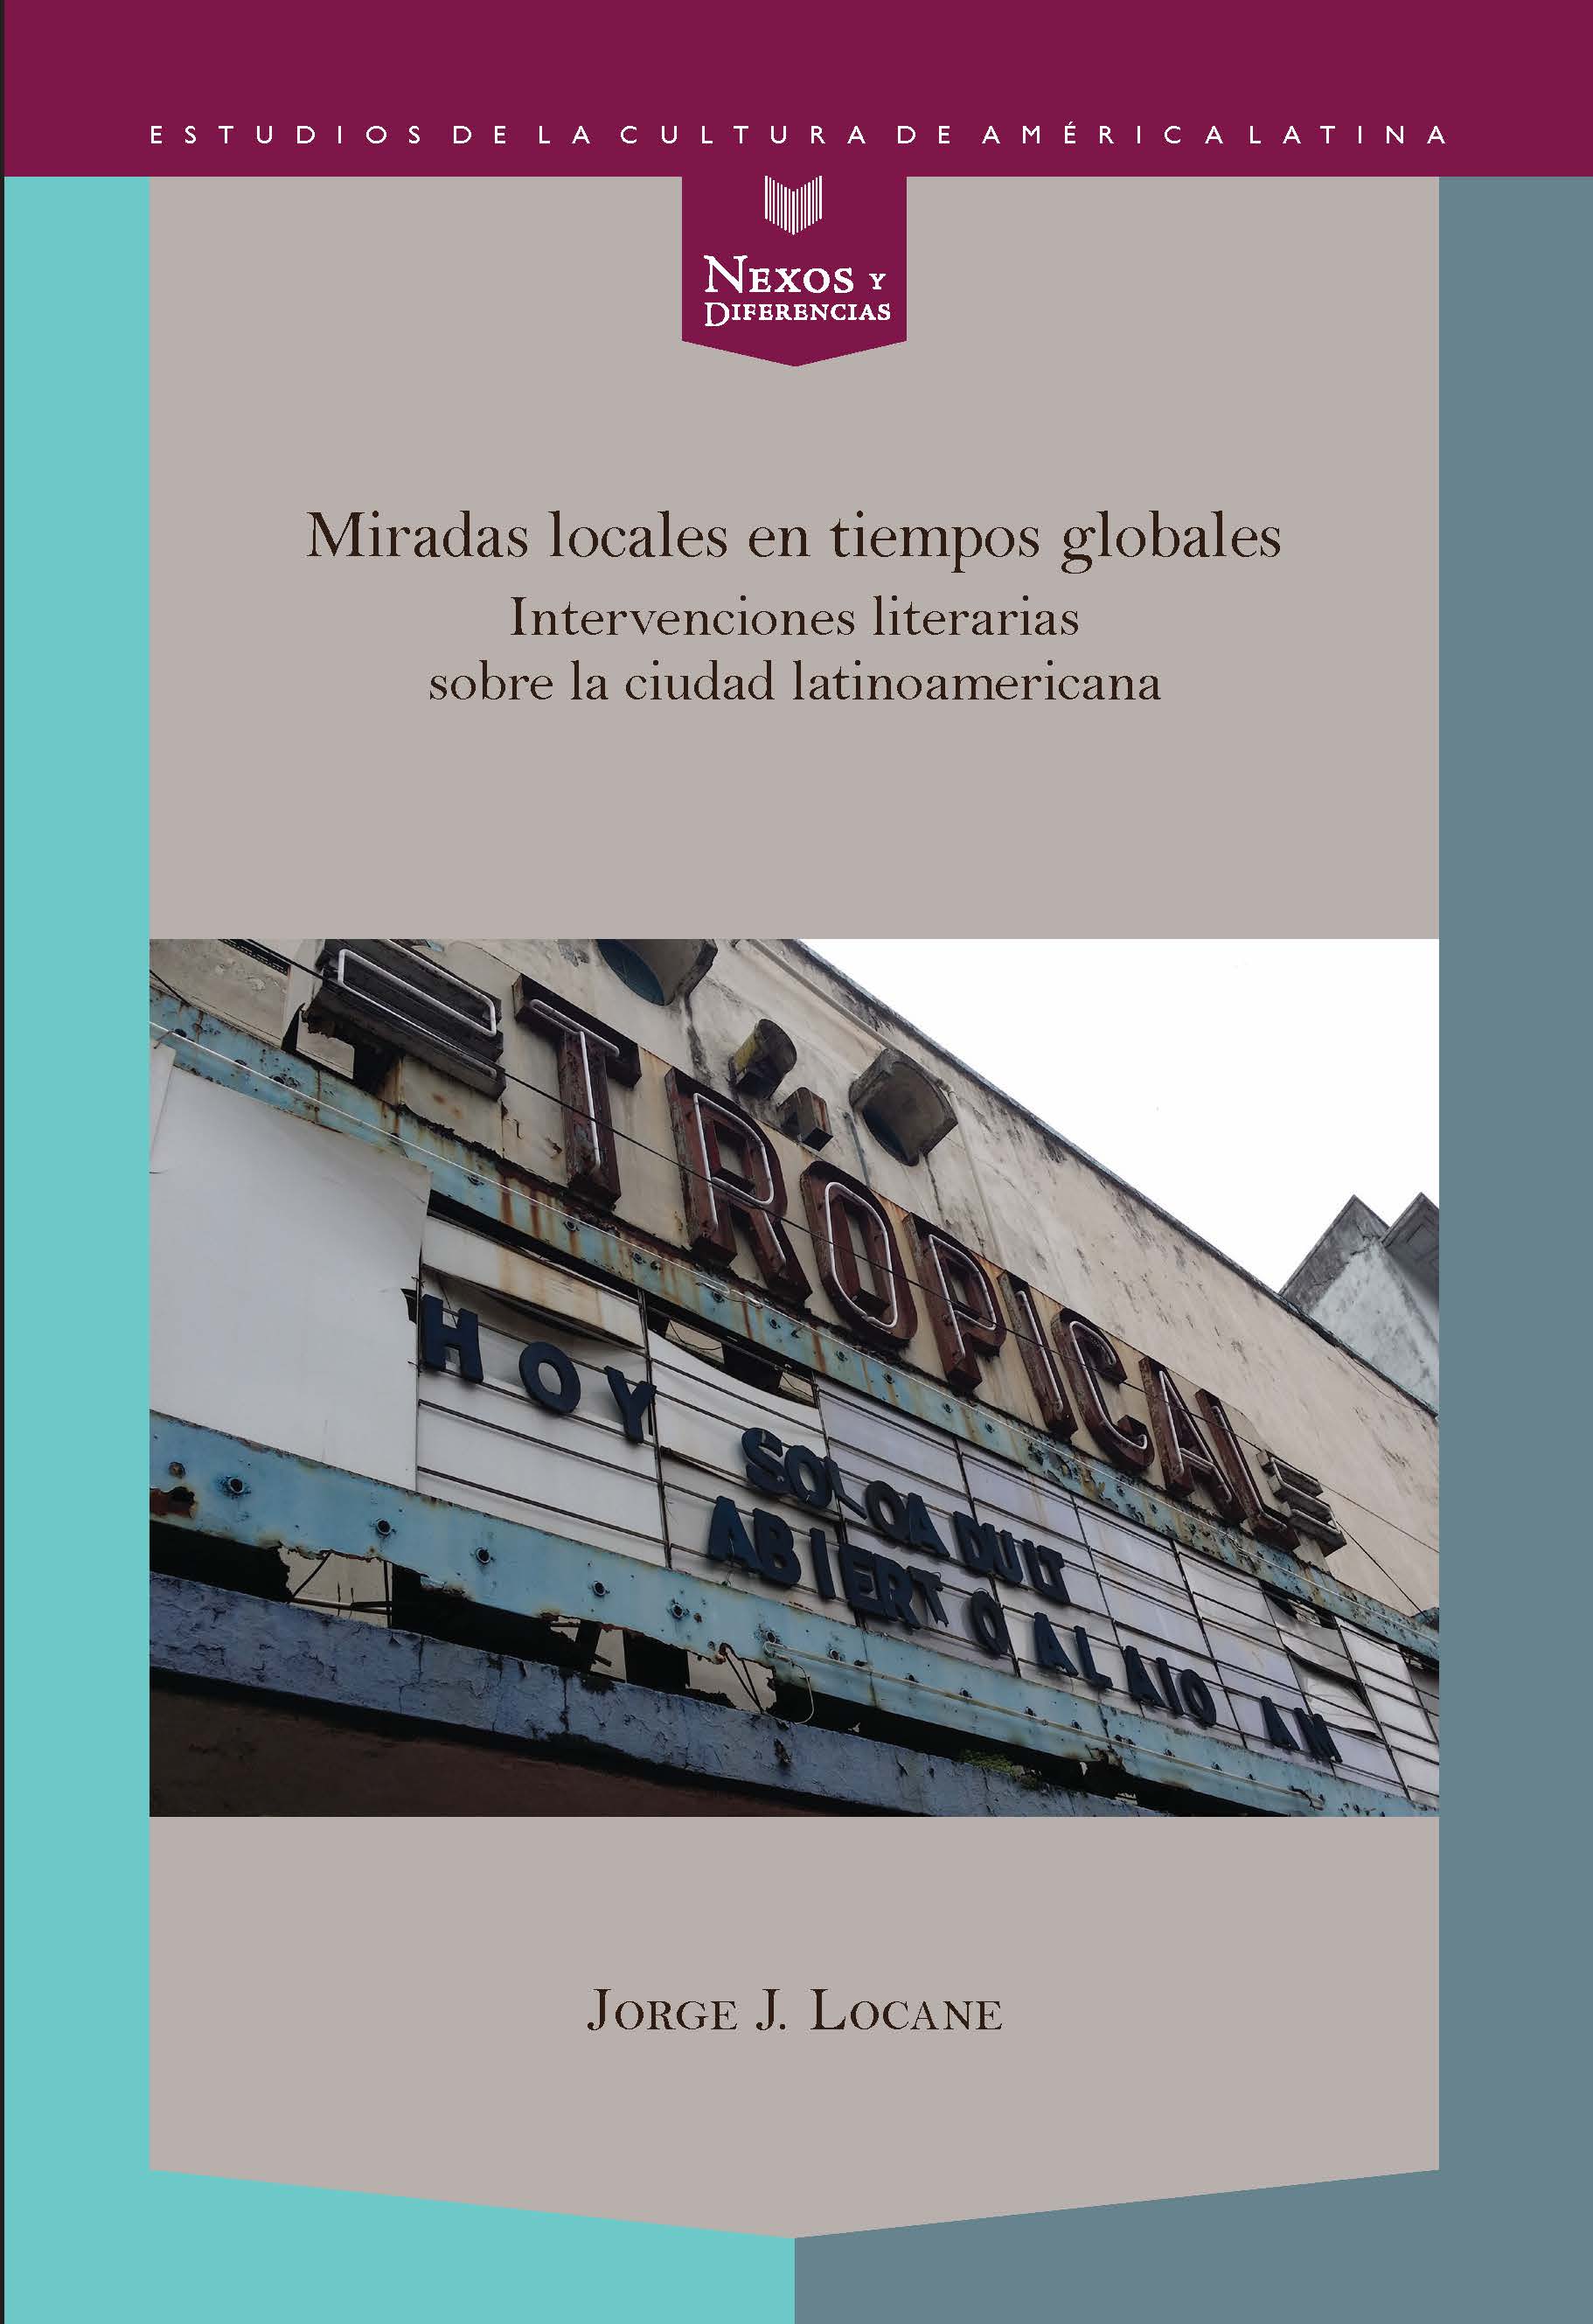 Miradas locales en tiempos globales «Intervenciones literarias sobre la ciudad latinoamericana»